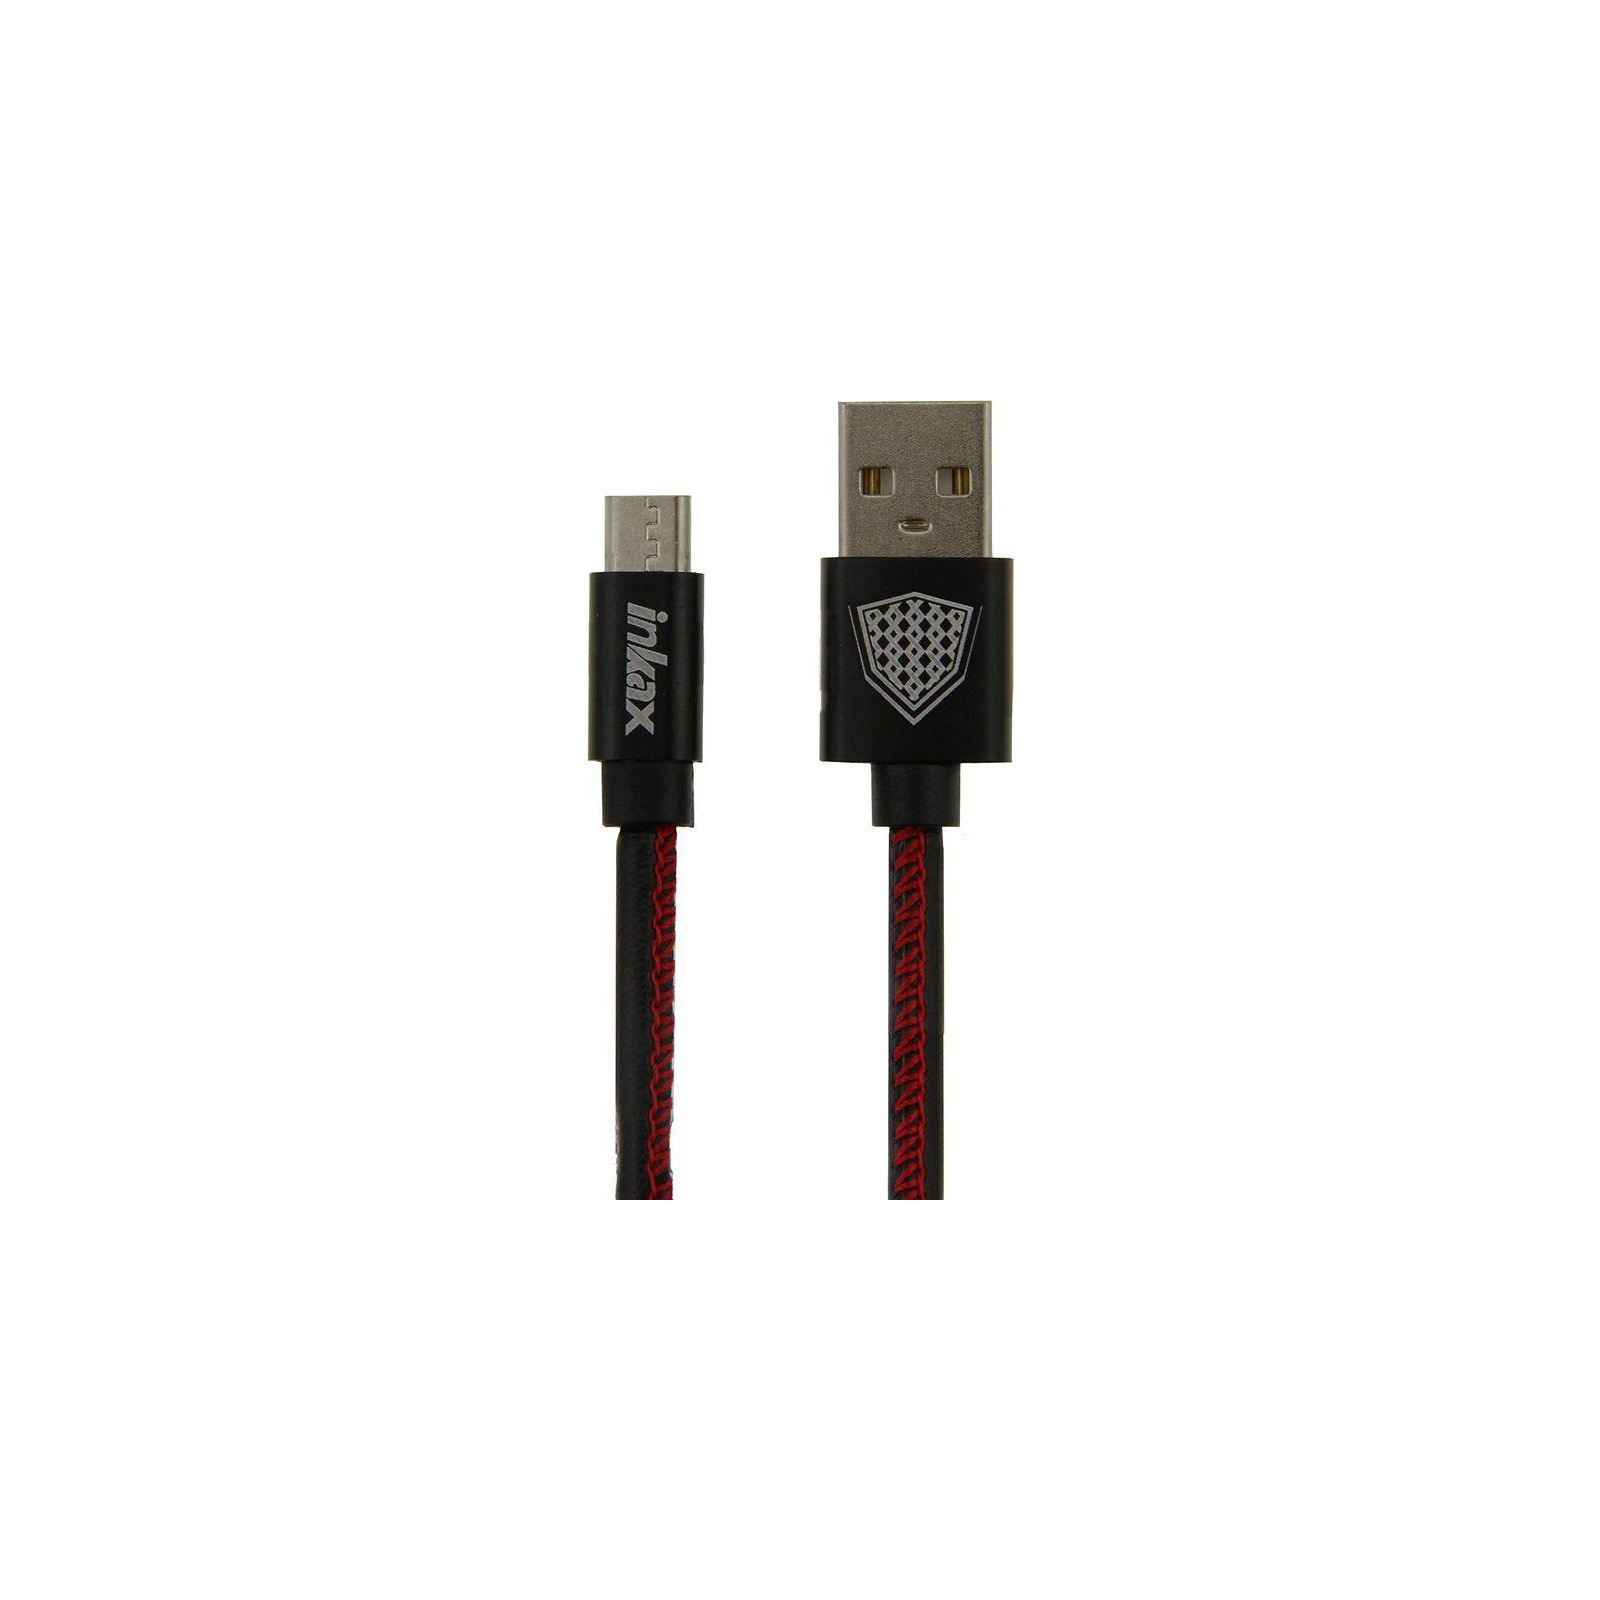 Дата кабель USB 2.0 AM to Micro 5P 1.0m CK-50 Black Inkax (F_72195)